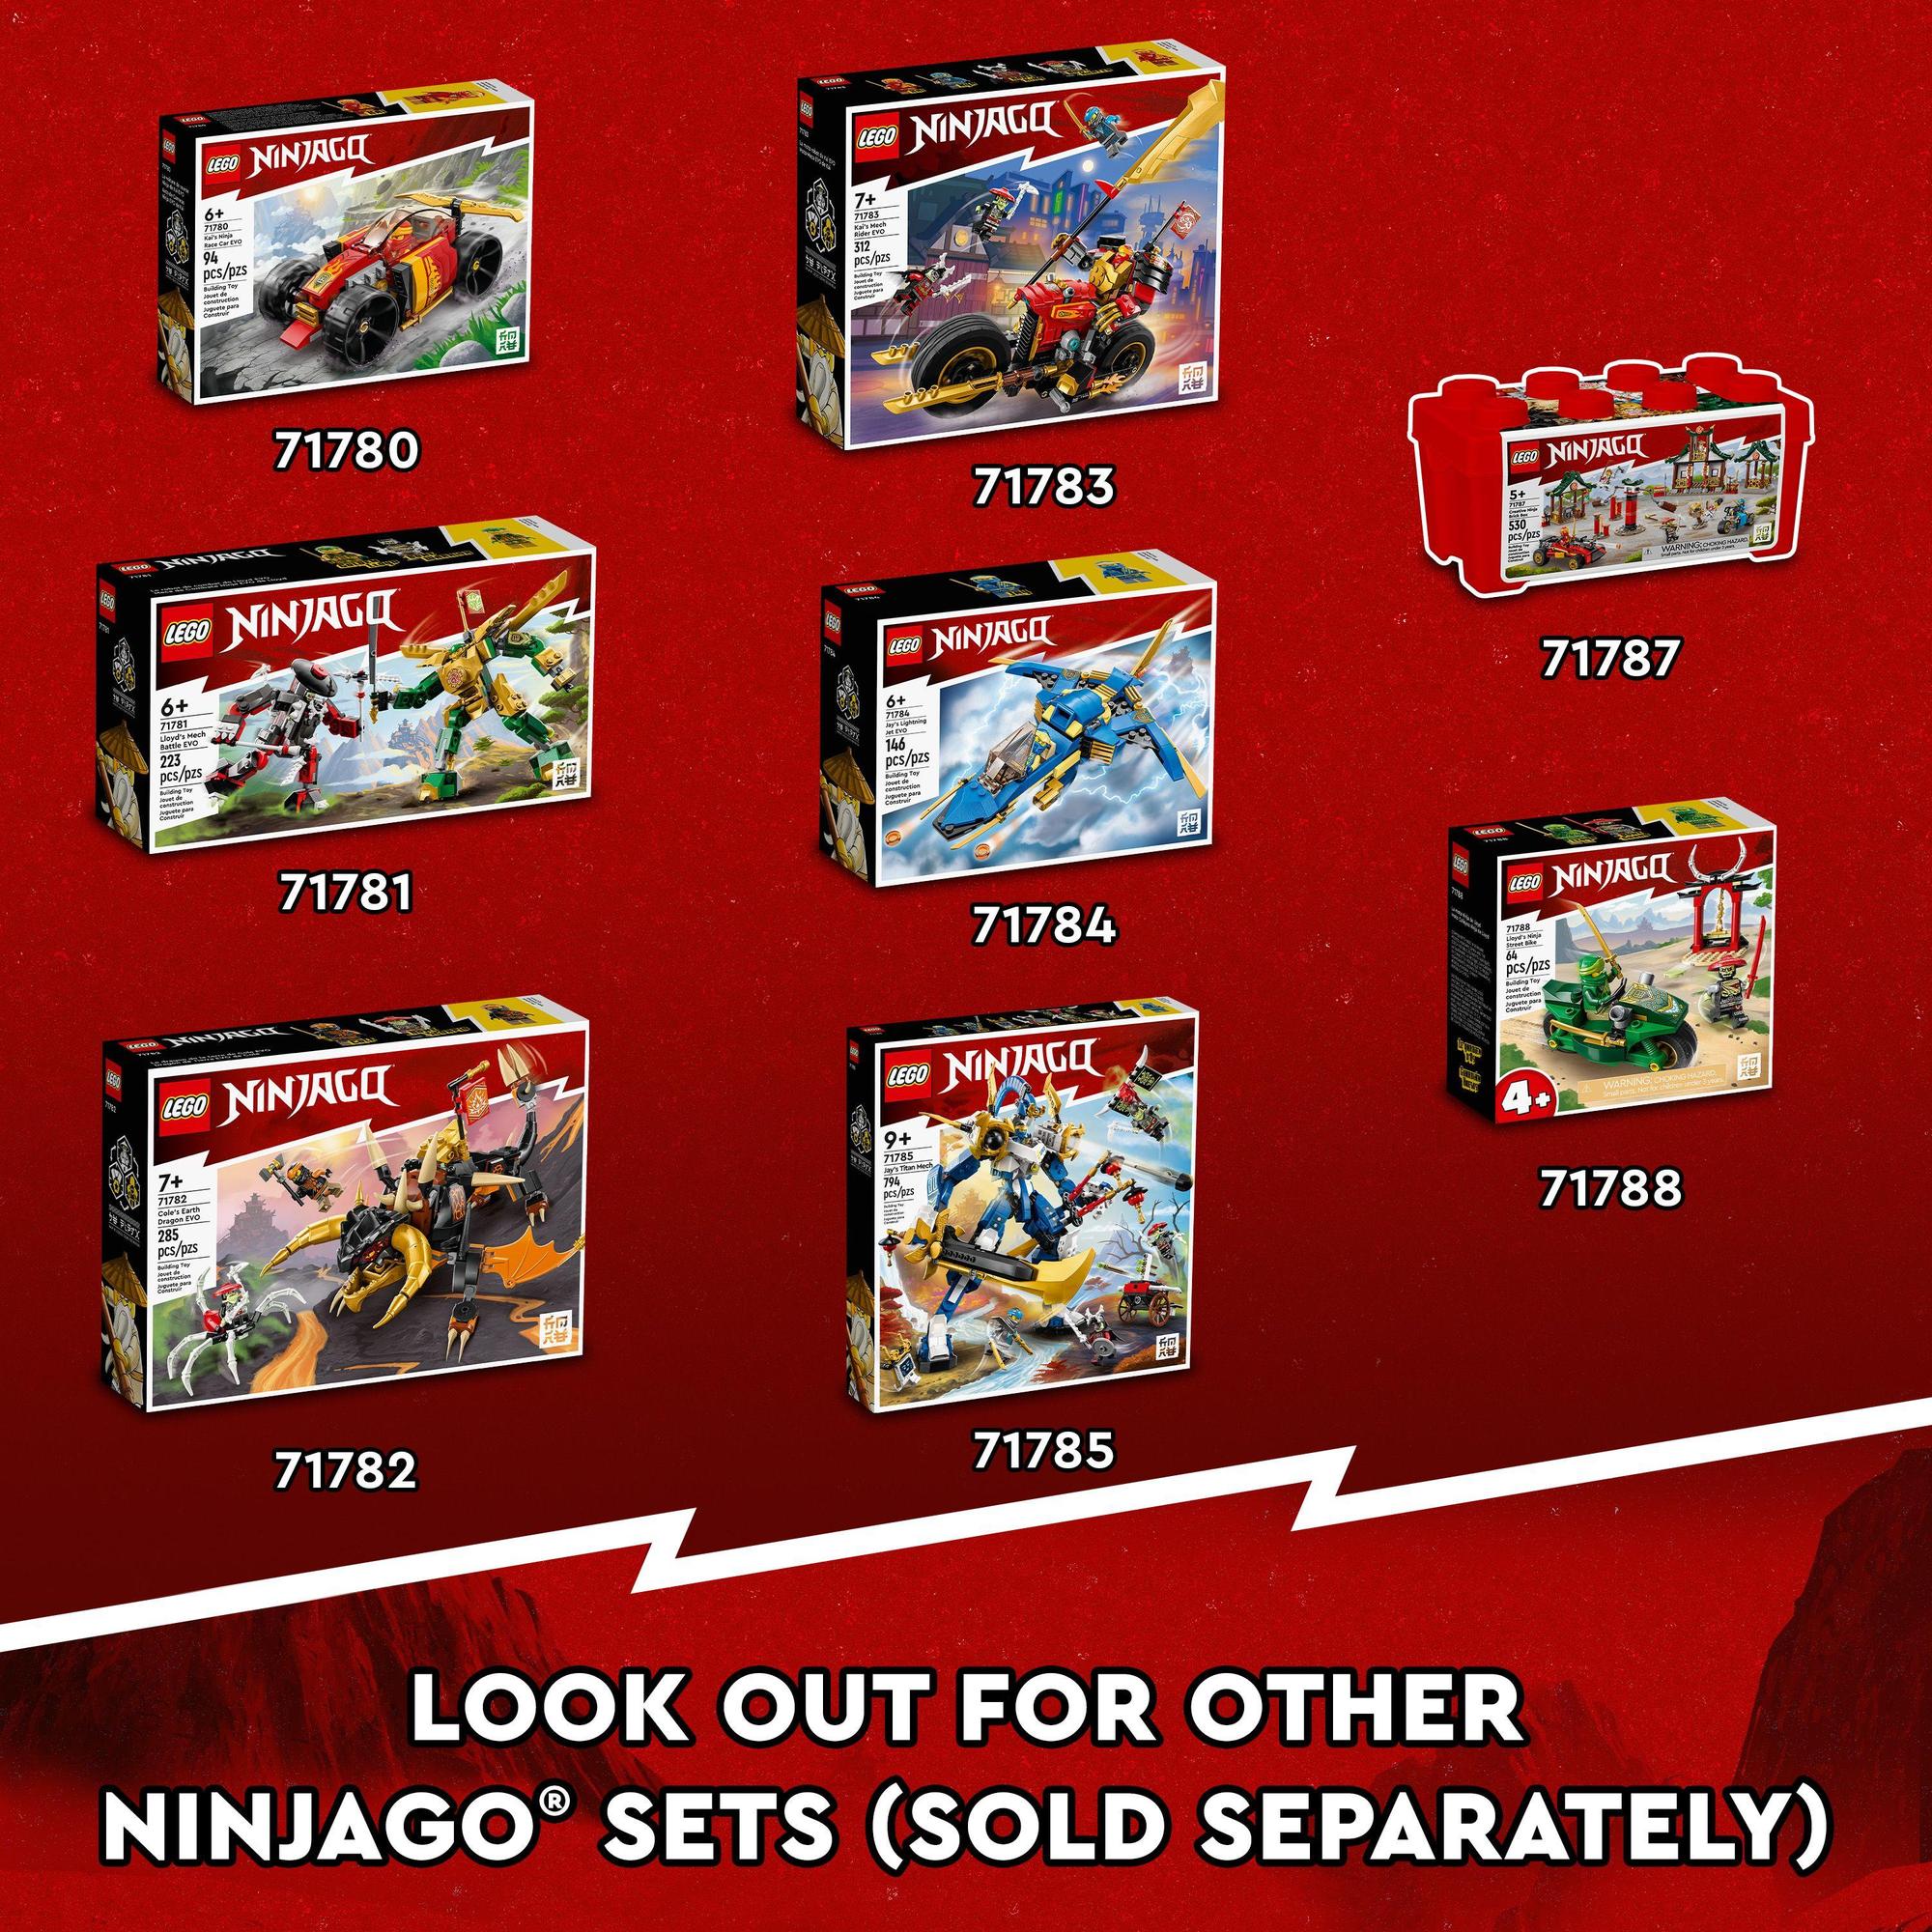 LEGO Ninjago 71786 Rồng Băng Tối Thượng Của Zane (973 Chi Tiết)